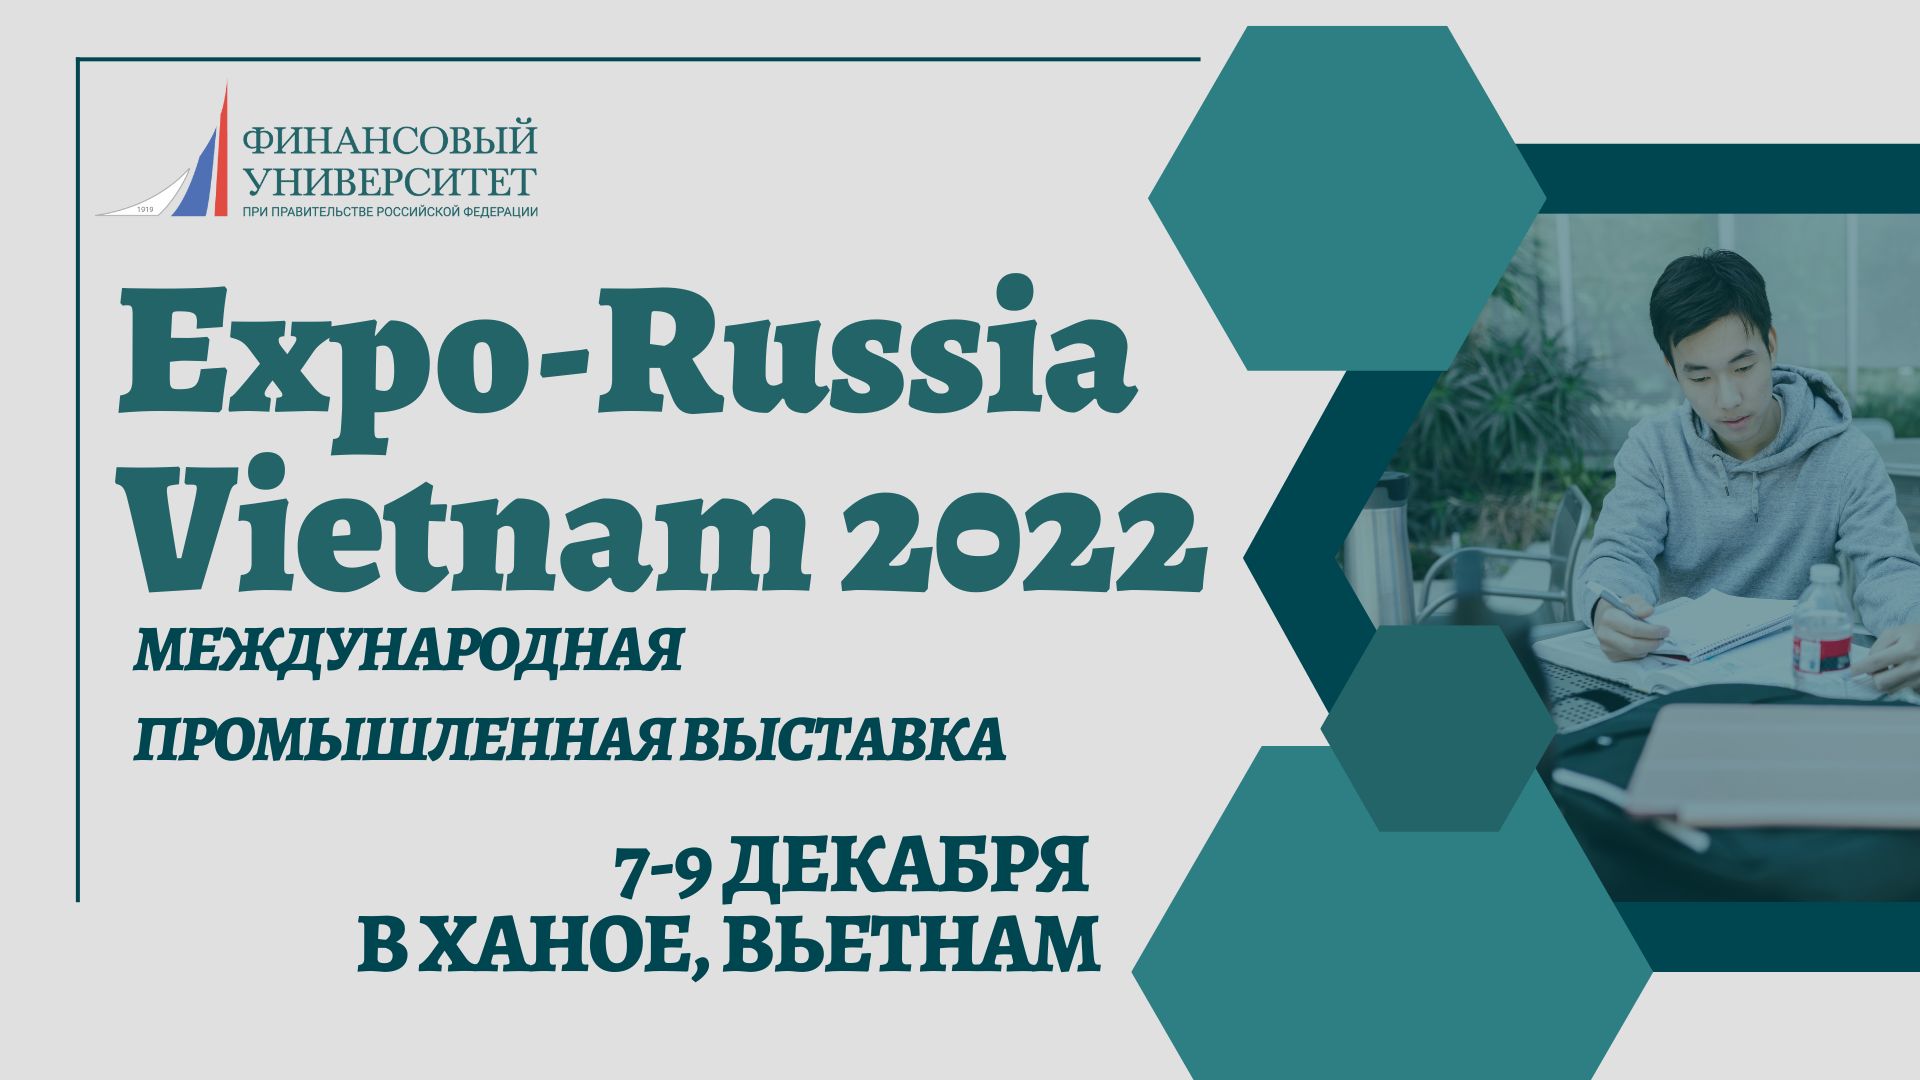 Финансовый университет принял участие в выставке «Expo-Russia Vietnam 2022»